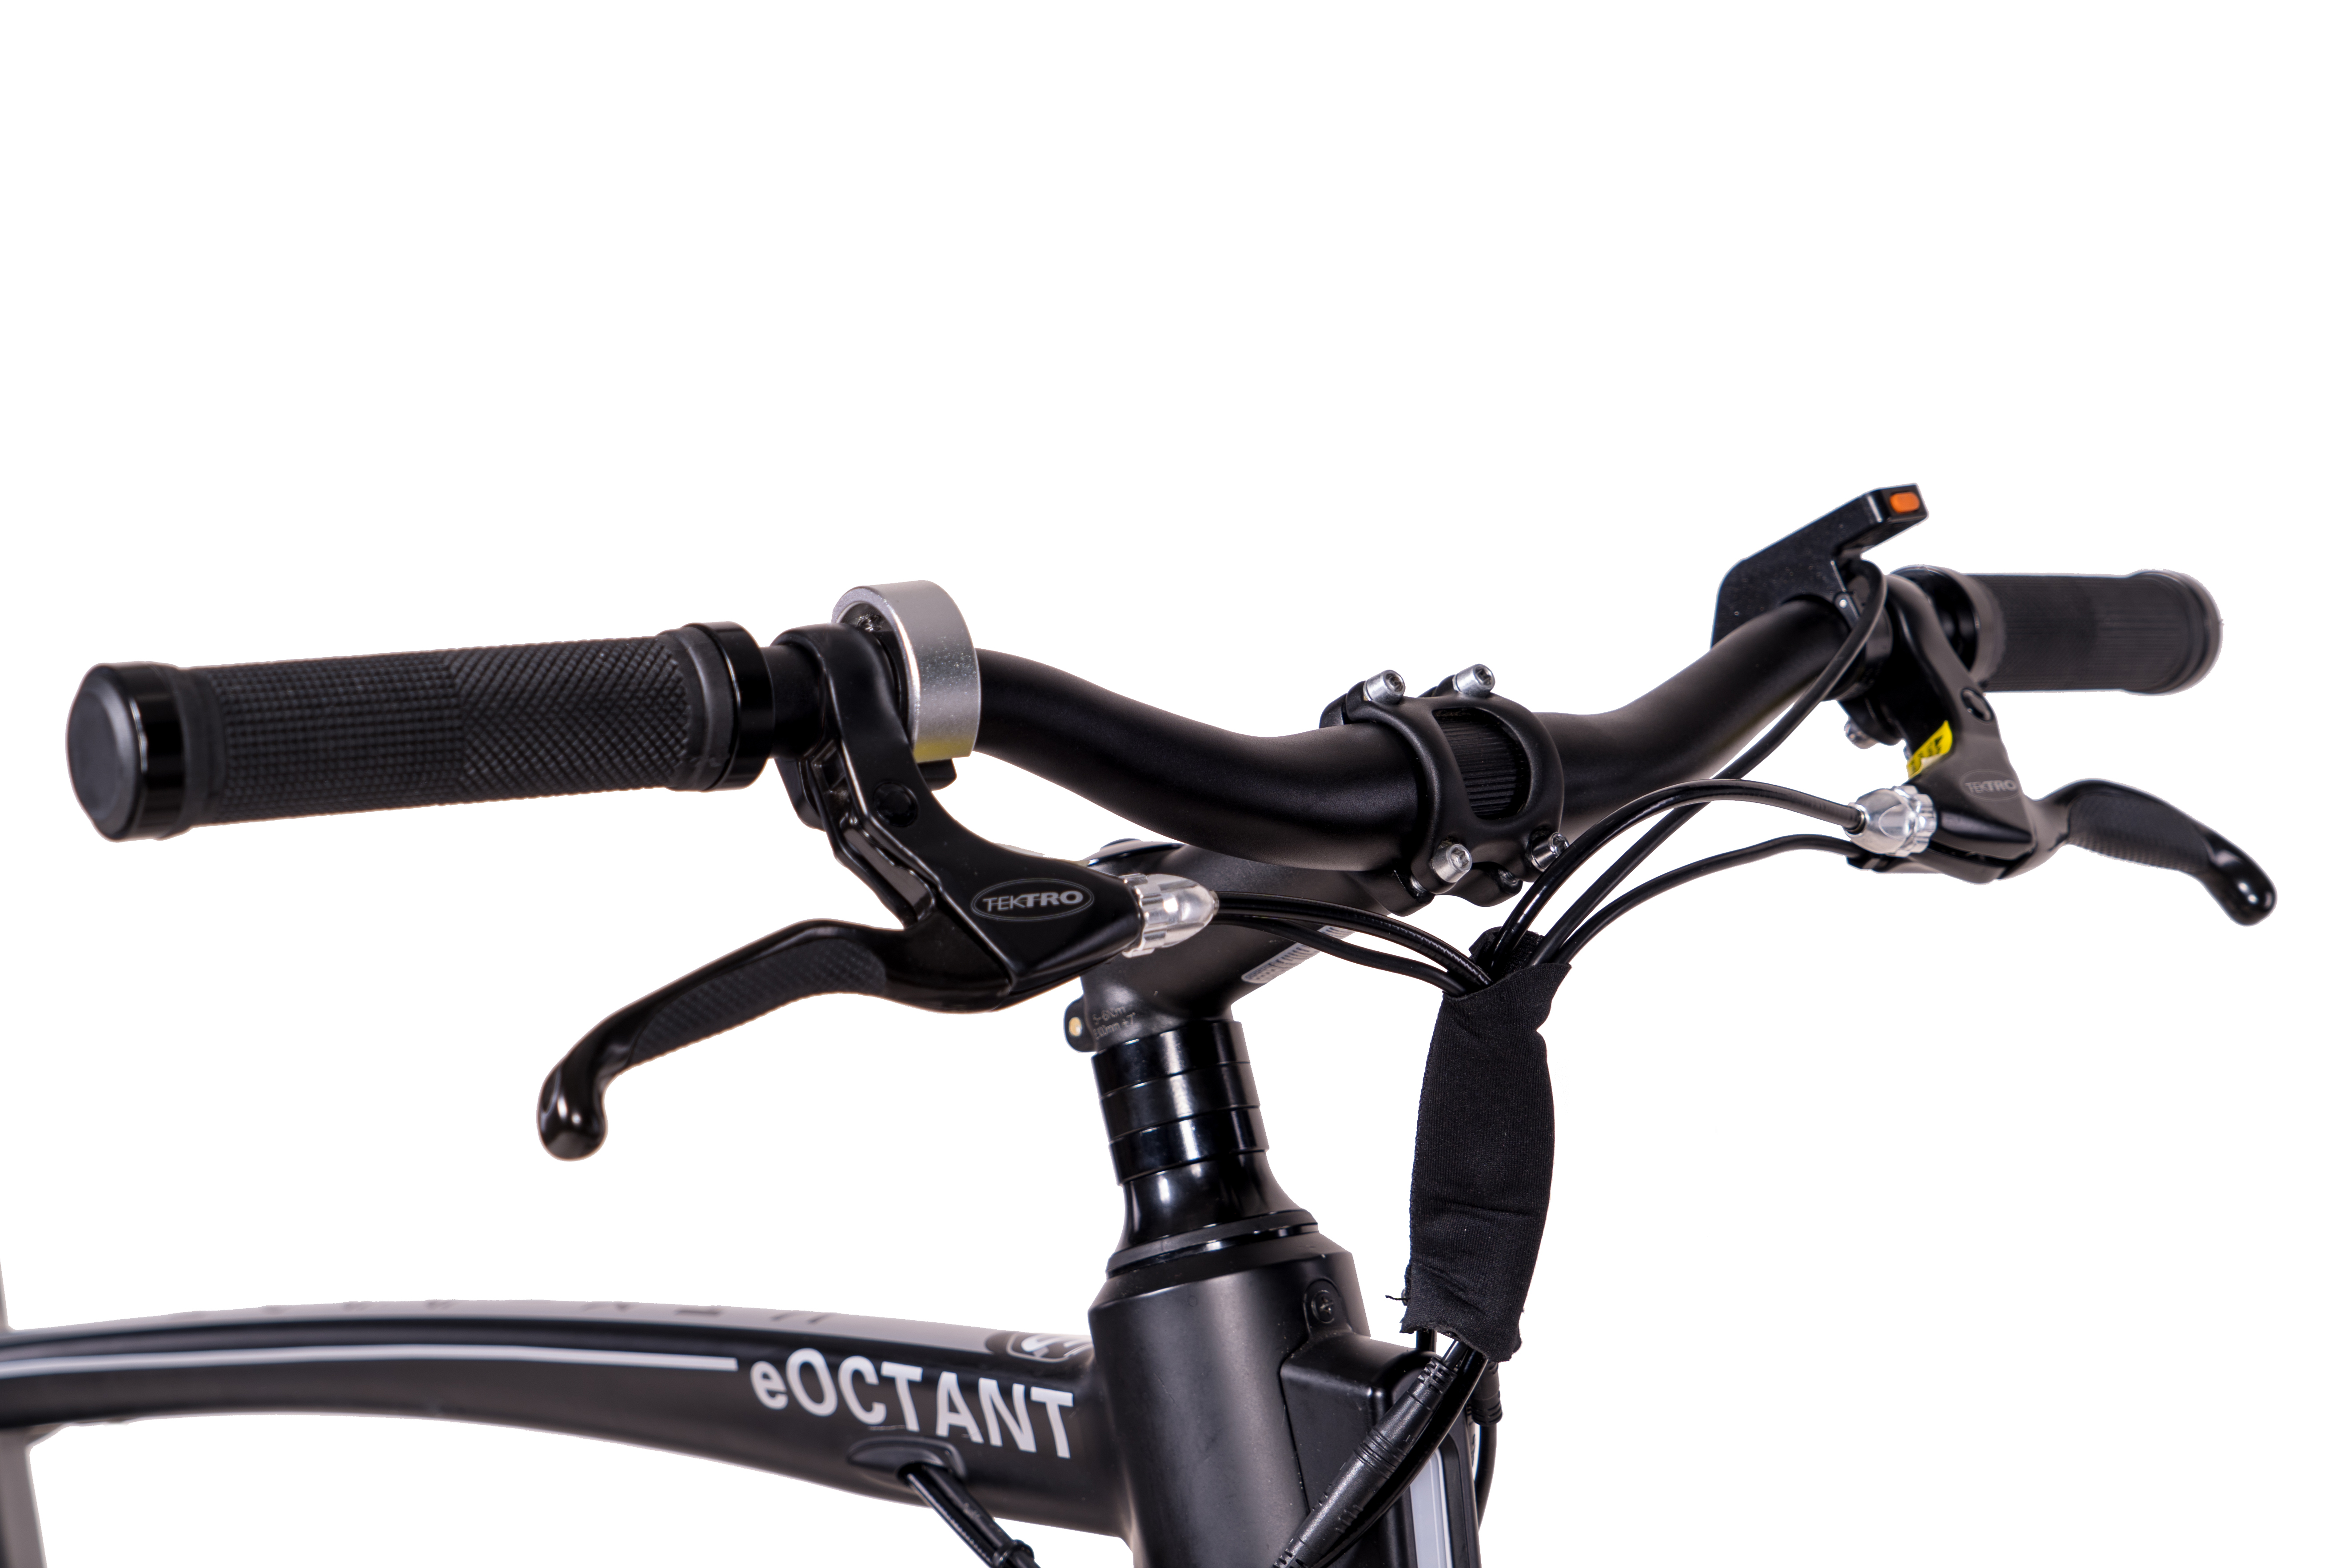 Zoll, 367 Wh, schwarz) Unisex-Rad, eOctant Rahmenhöhe: Urbanbike 52 28 Riemenantrieb cm, CHRISSON (Laufradgröße: